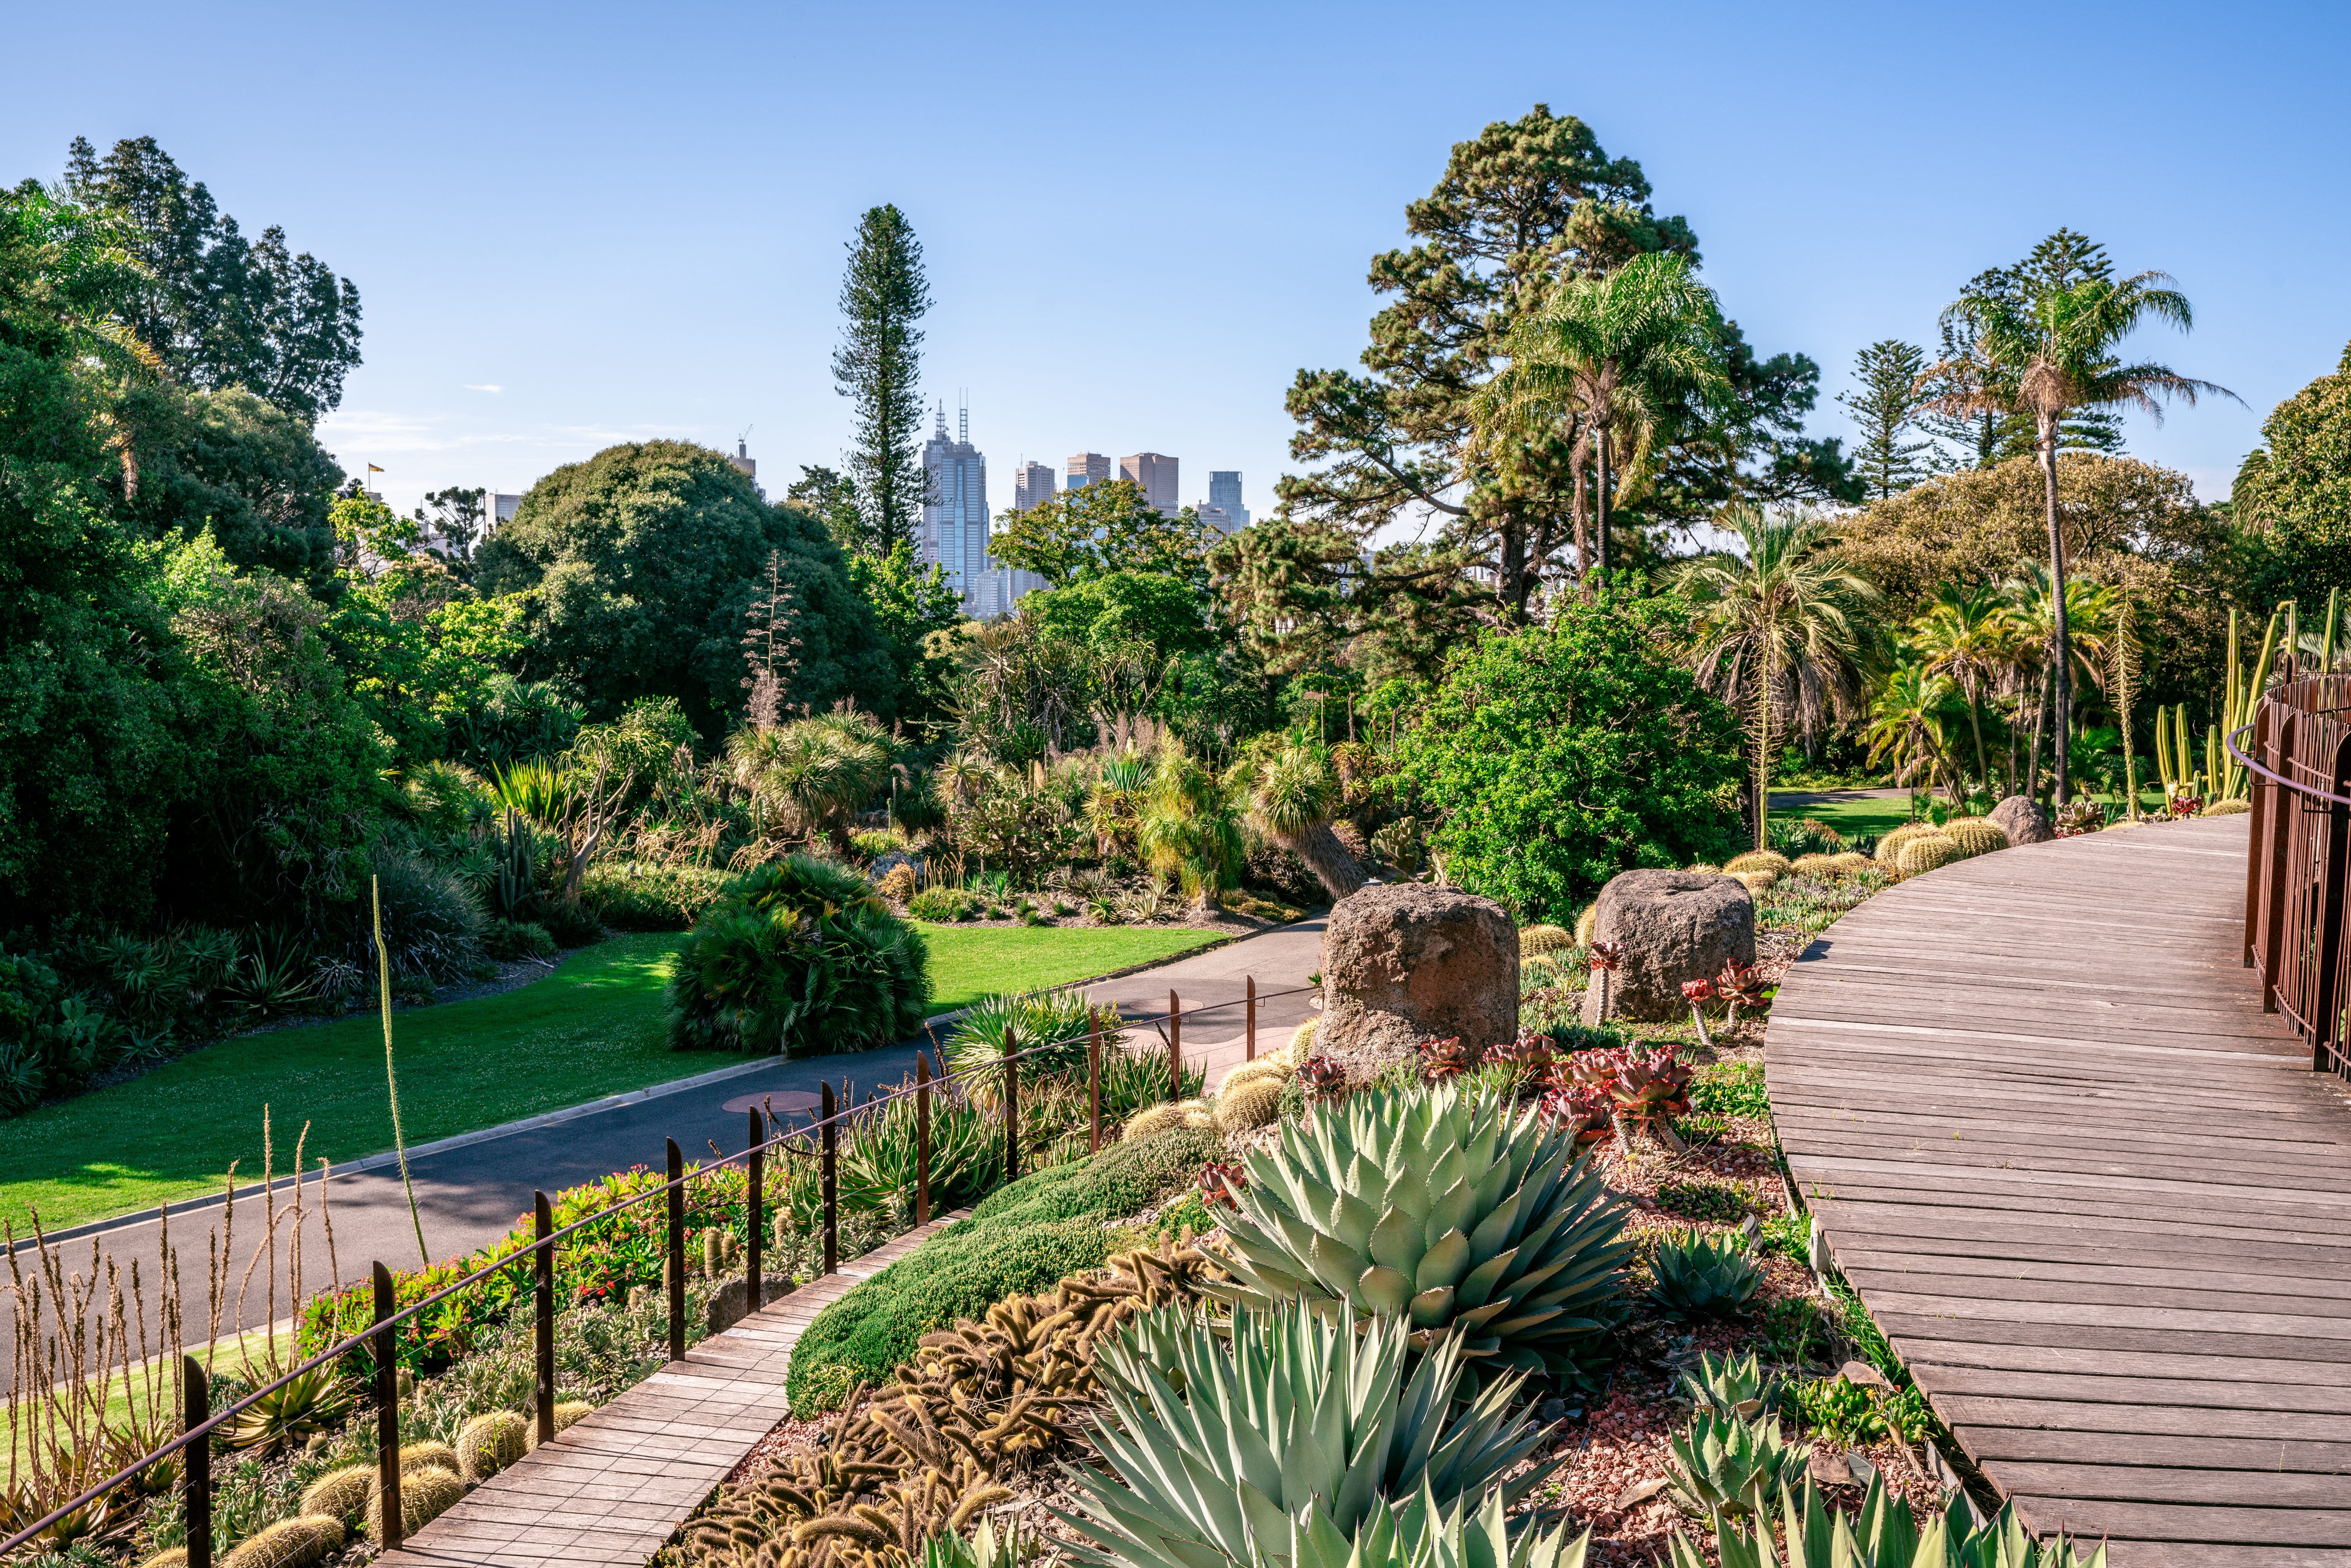 Vue panoramique sur les jardins botaniques royaux de Melbourne VicAustralia © Keitma - stock.adobe.com